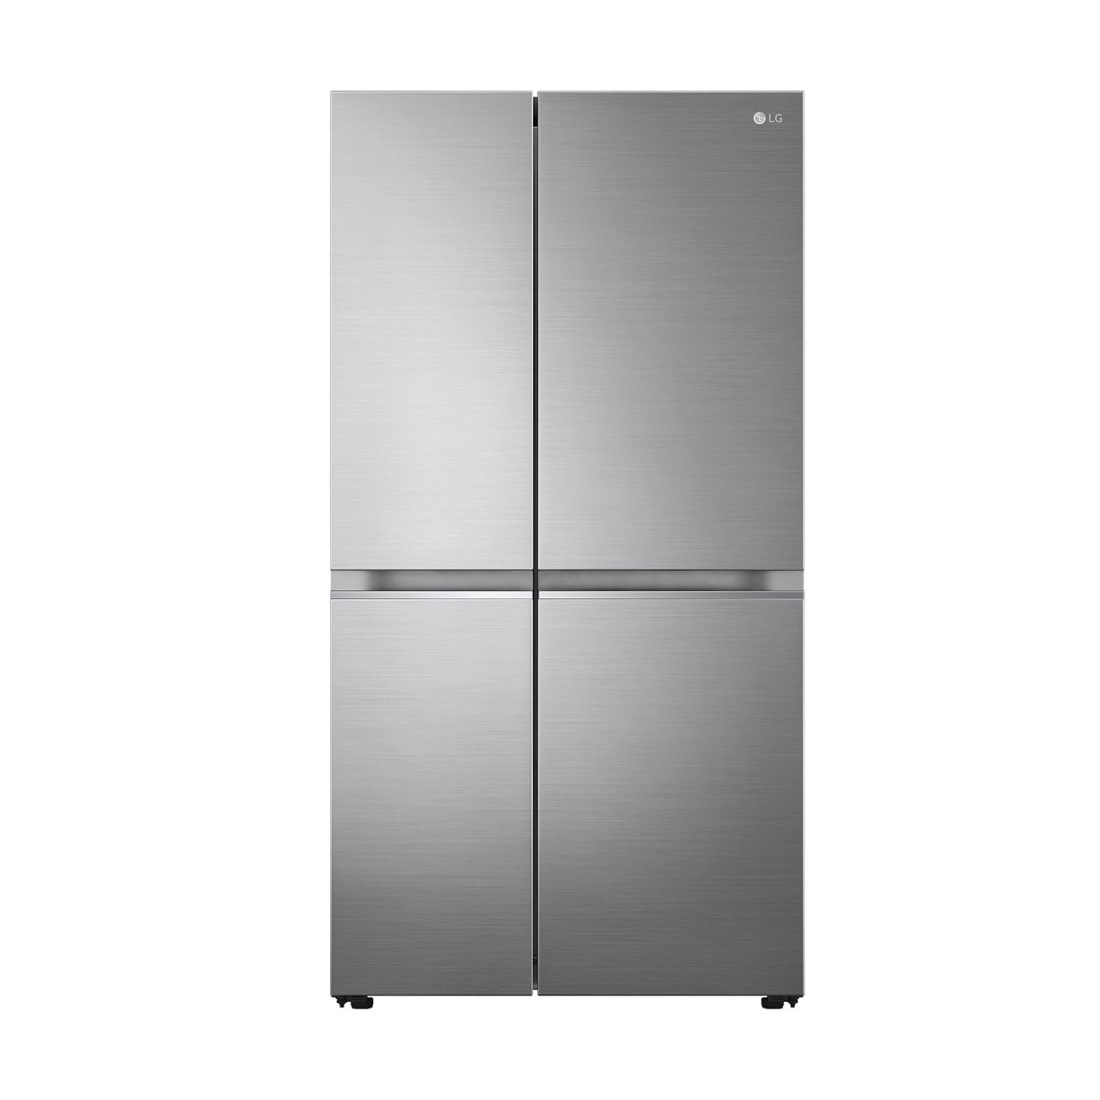 No frost y rebajado: este frigorífico LG está tirado de precio en